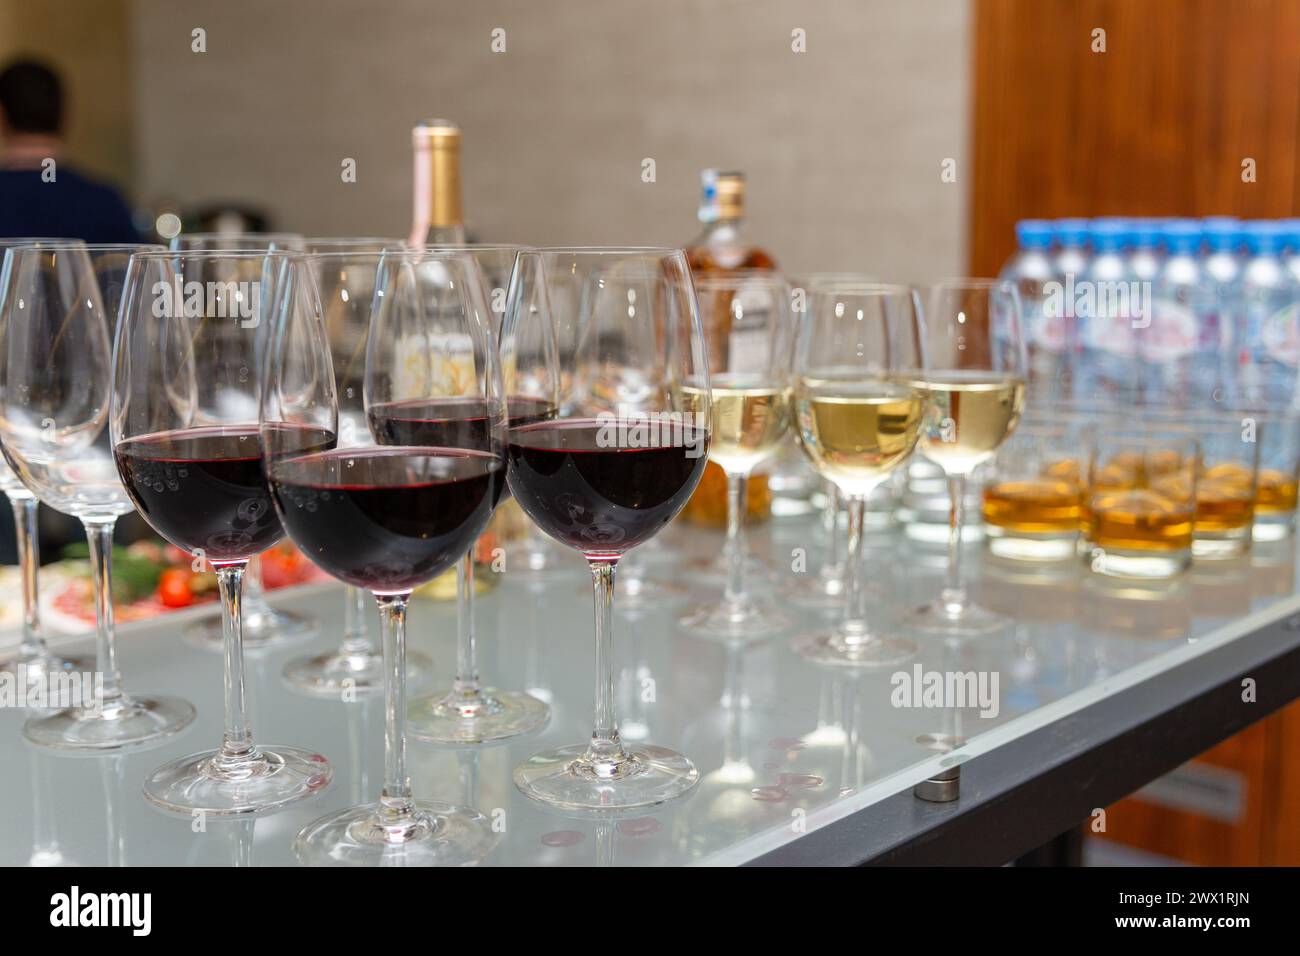 Viele Gläser mit Scotch, Brandy und Weinen stehen an der Bar. Verschiedene alkoholische Getränke in Gläsern am Buffet auf der Party. Stockfoto